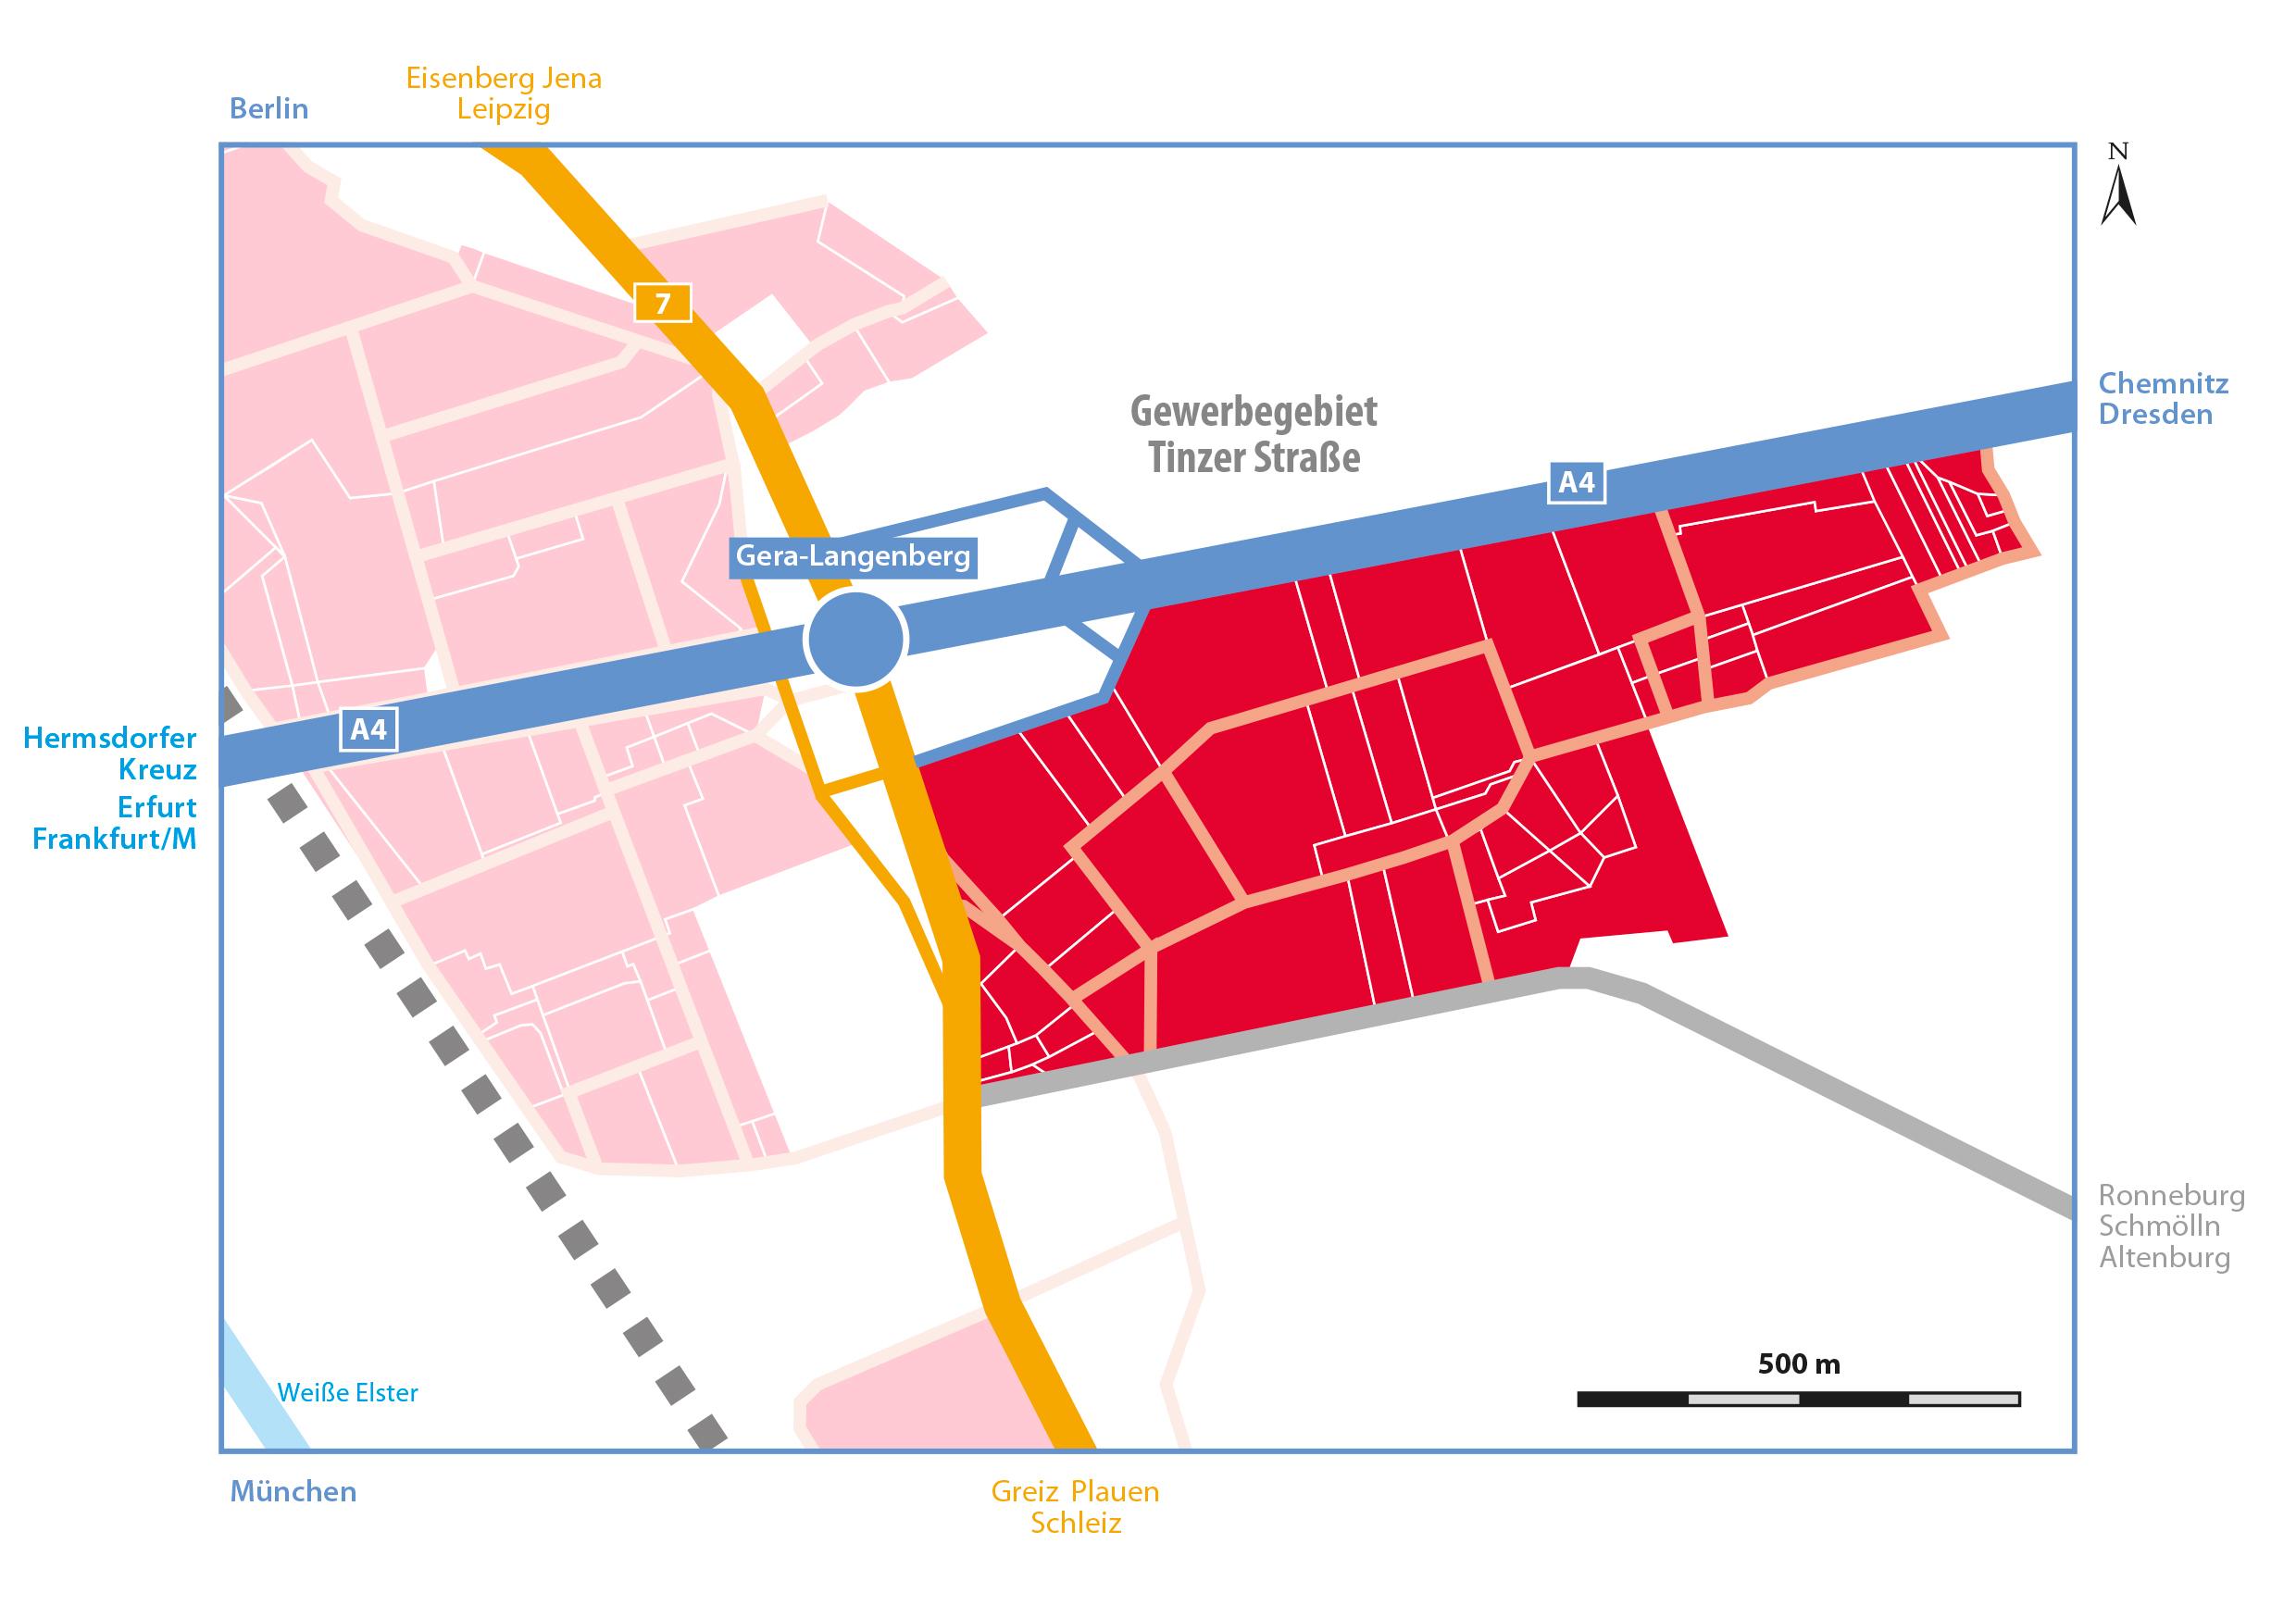 Die Karte zum Gewerbegebiet "Tinzer Straße" zeigt die sehr gute Anbindung des Gebietes an die Autobahn.